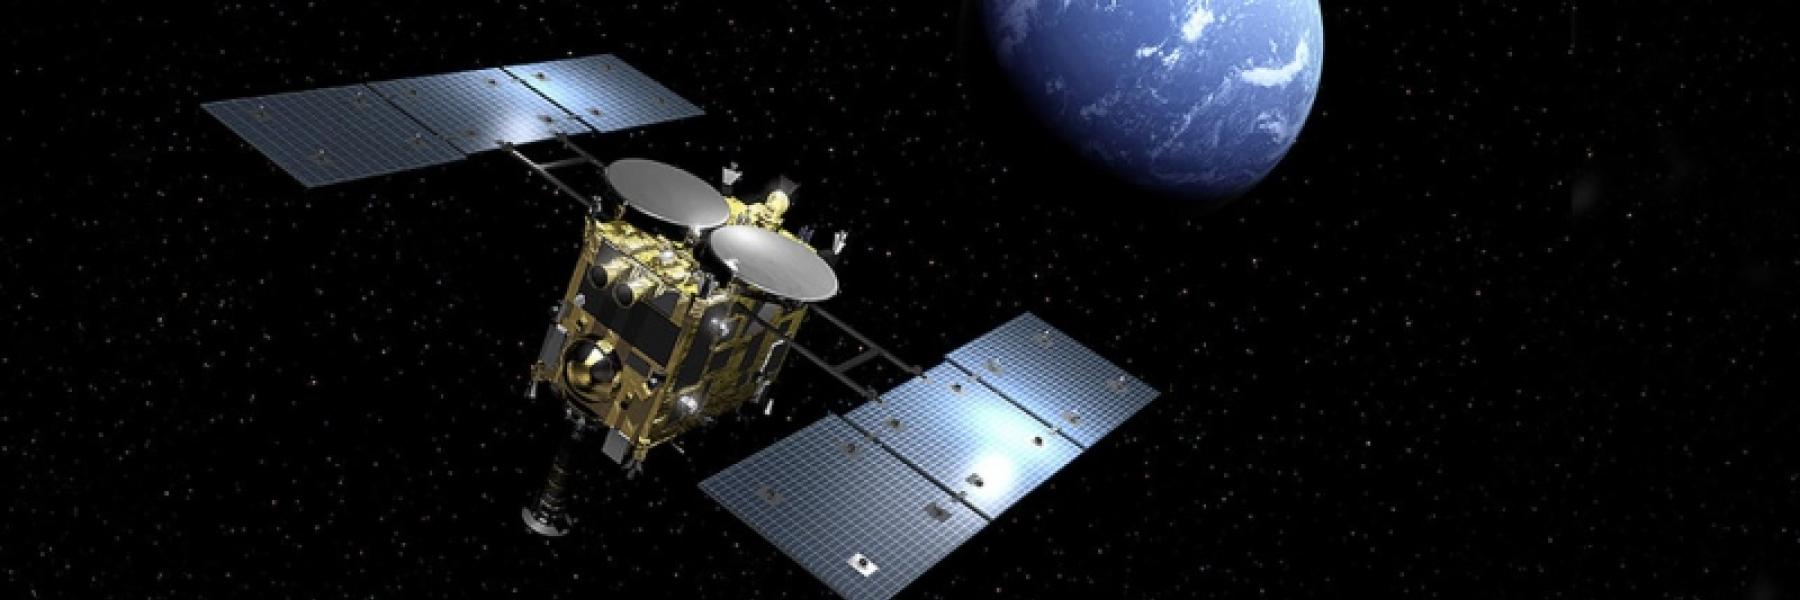 وصول الكبسولة الفضائية اليابانية Hayabusa2 لكوكب الأرض حاملة عينات من كوكب